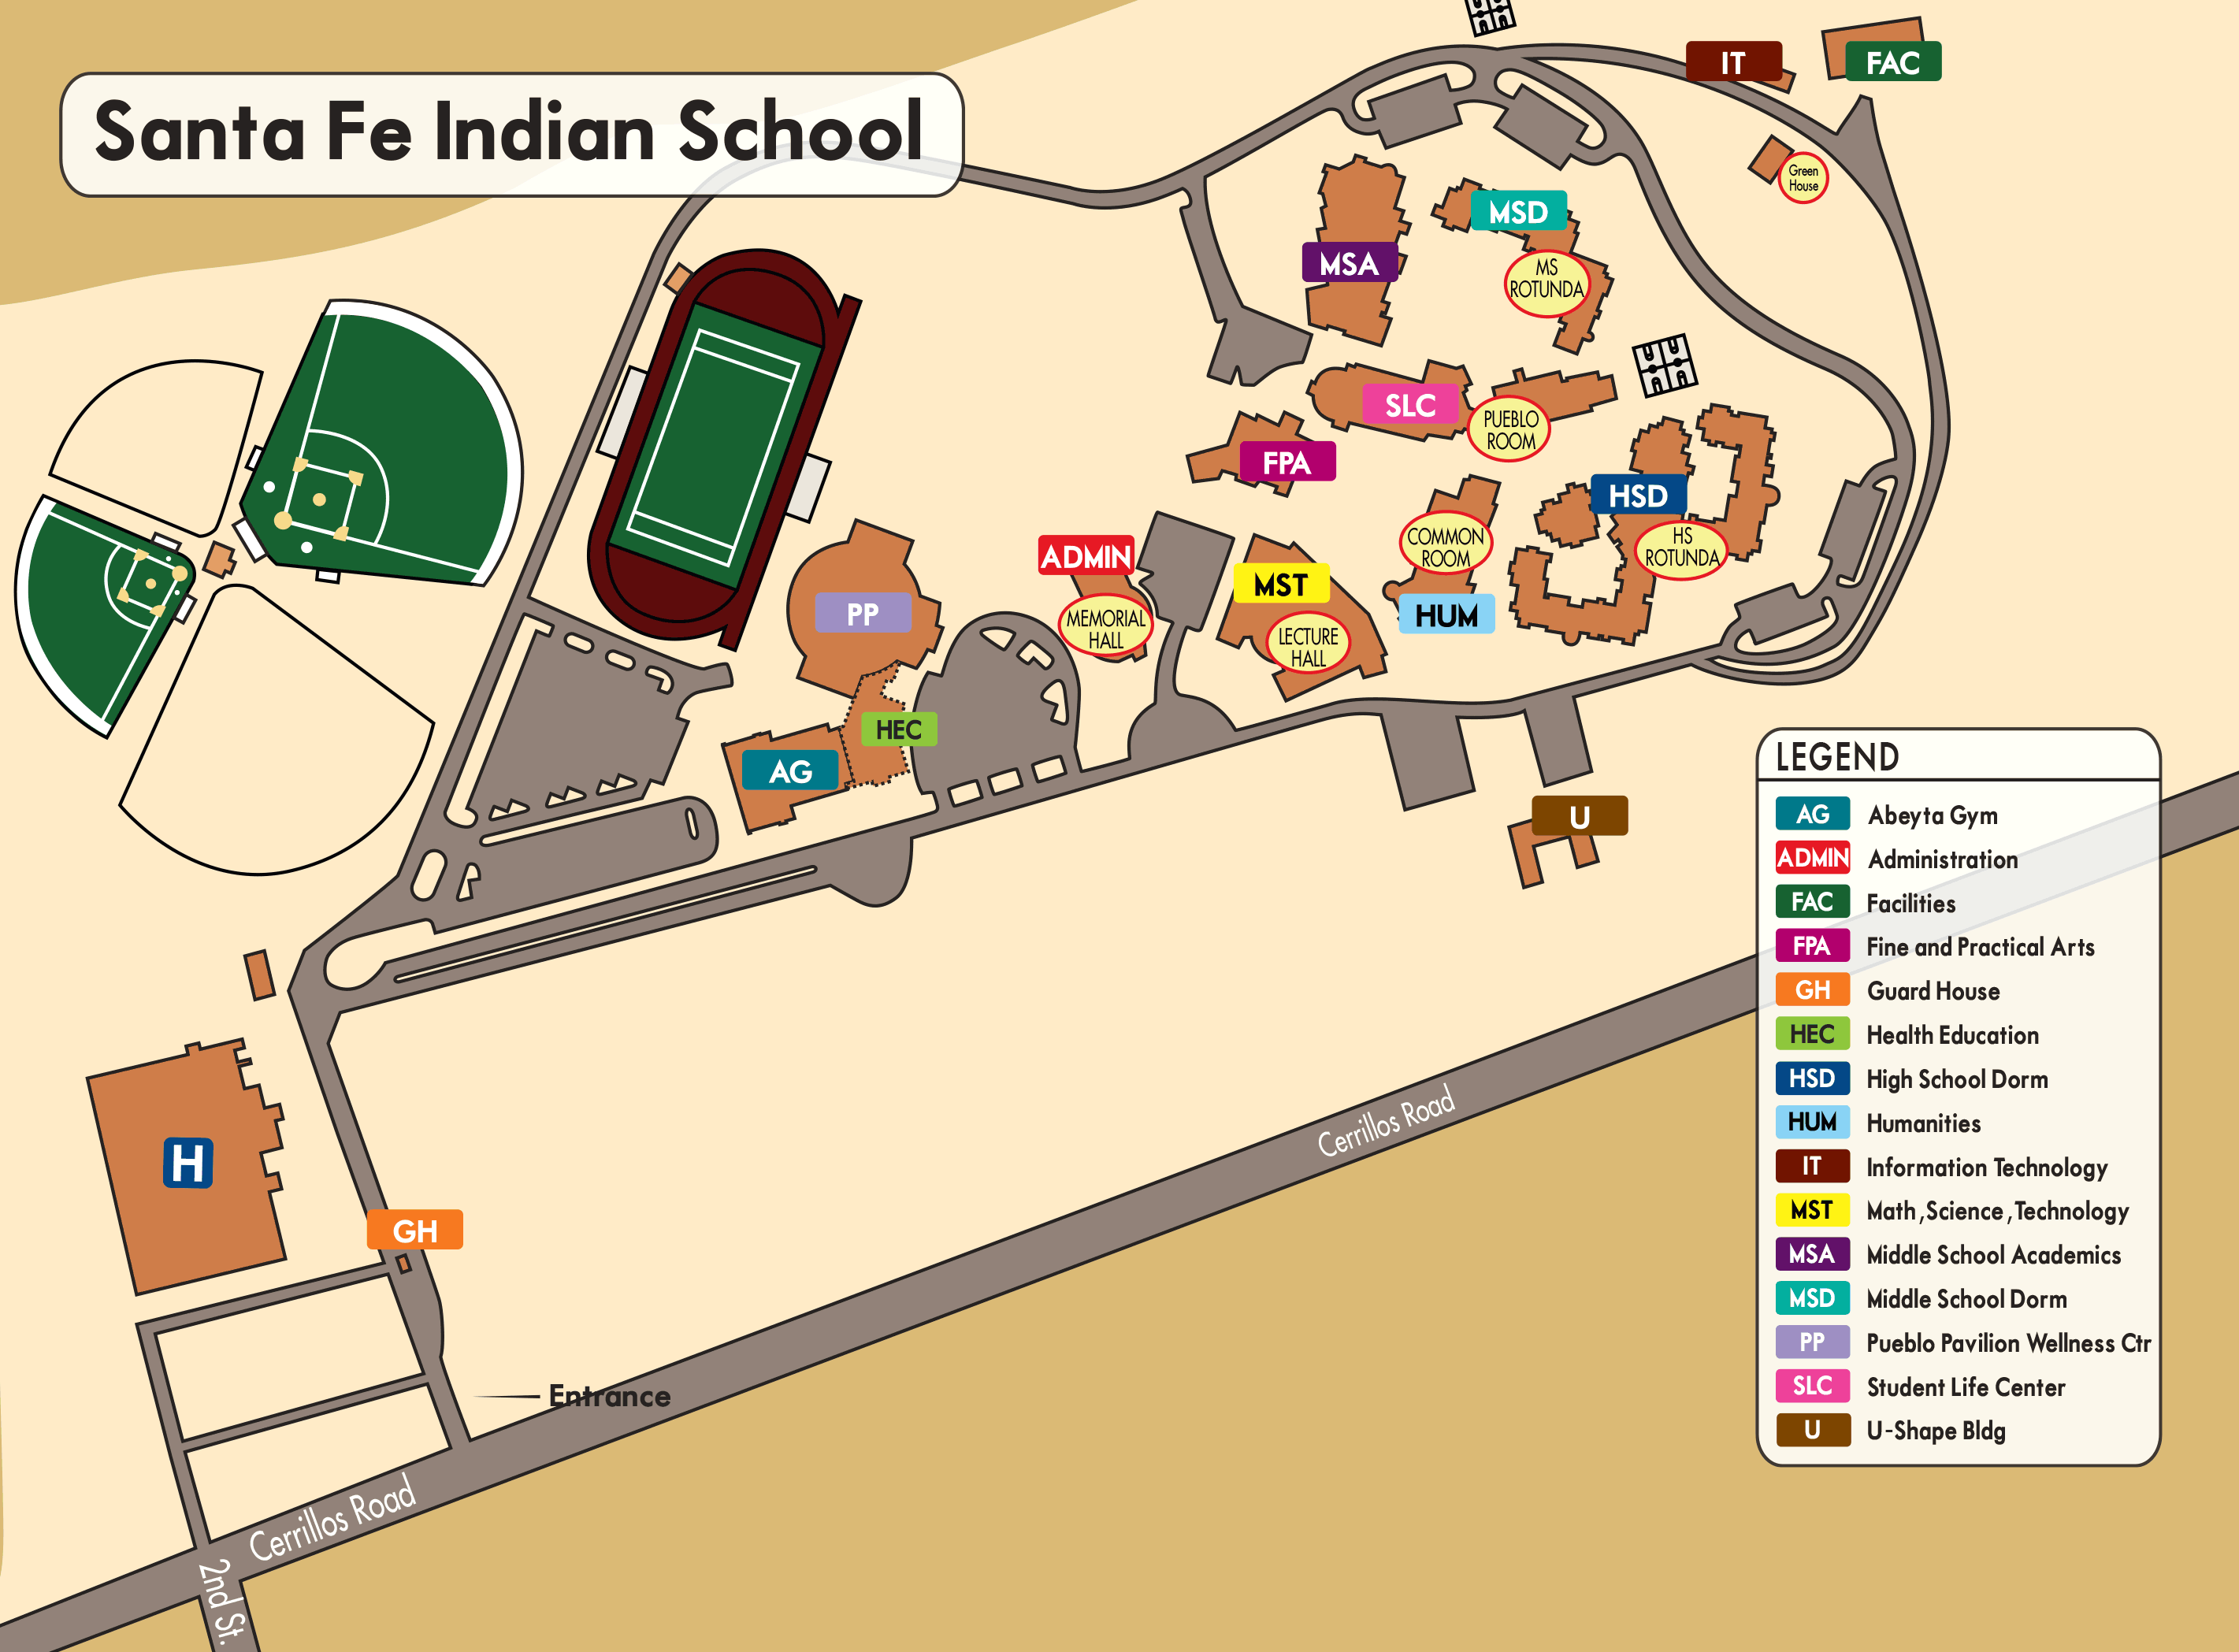 Santa Fe Indian School Campus Map